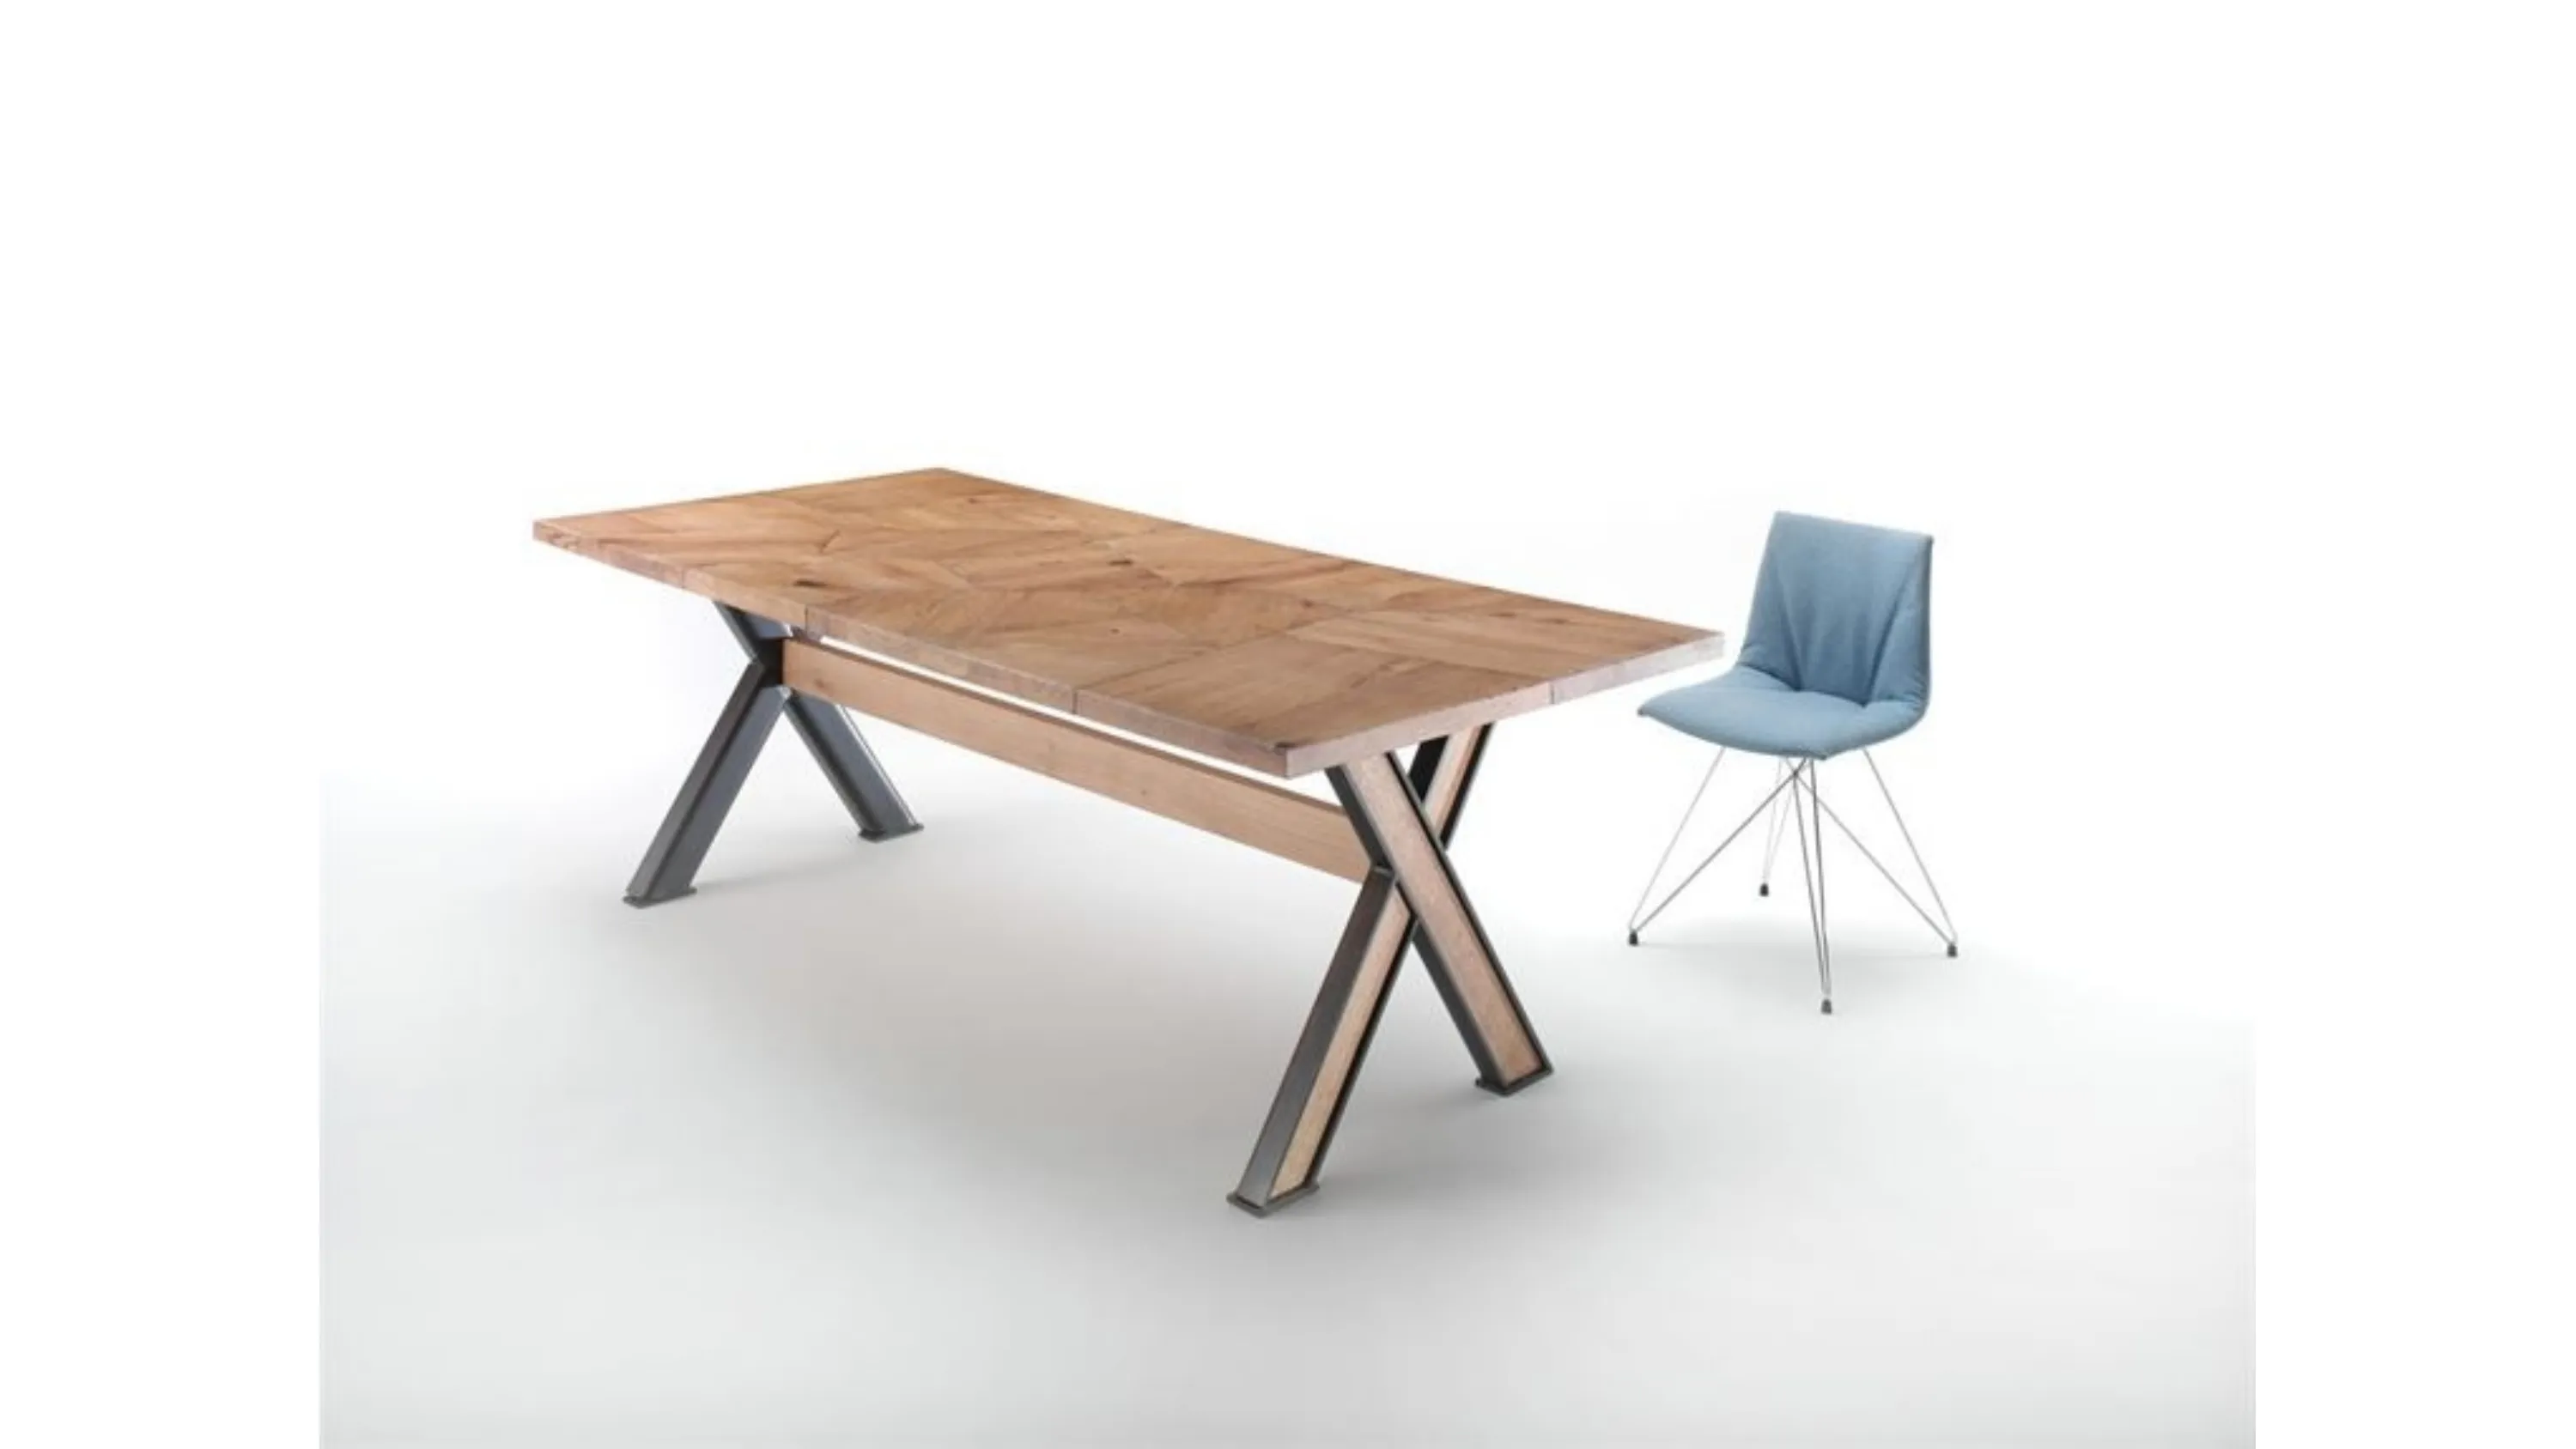 Tavolo in legno massello con gambe a X in ferro Iron 4329 di Conarte